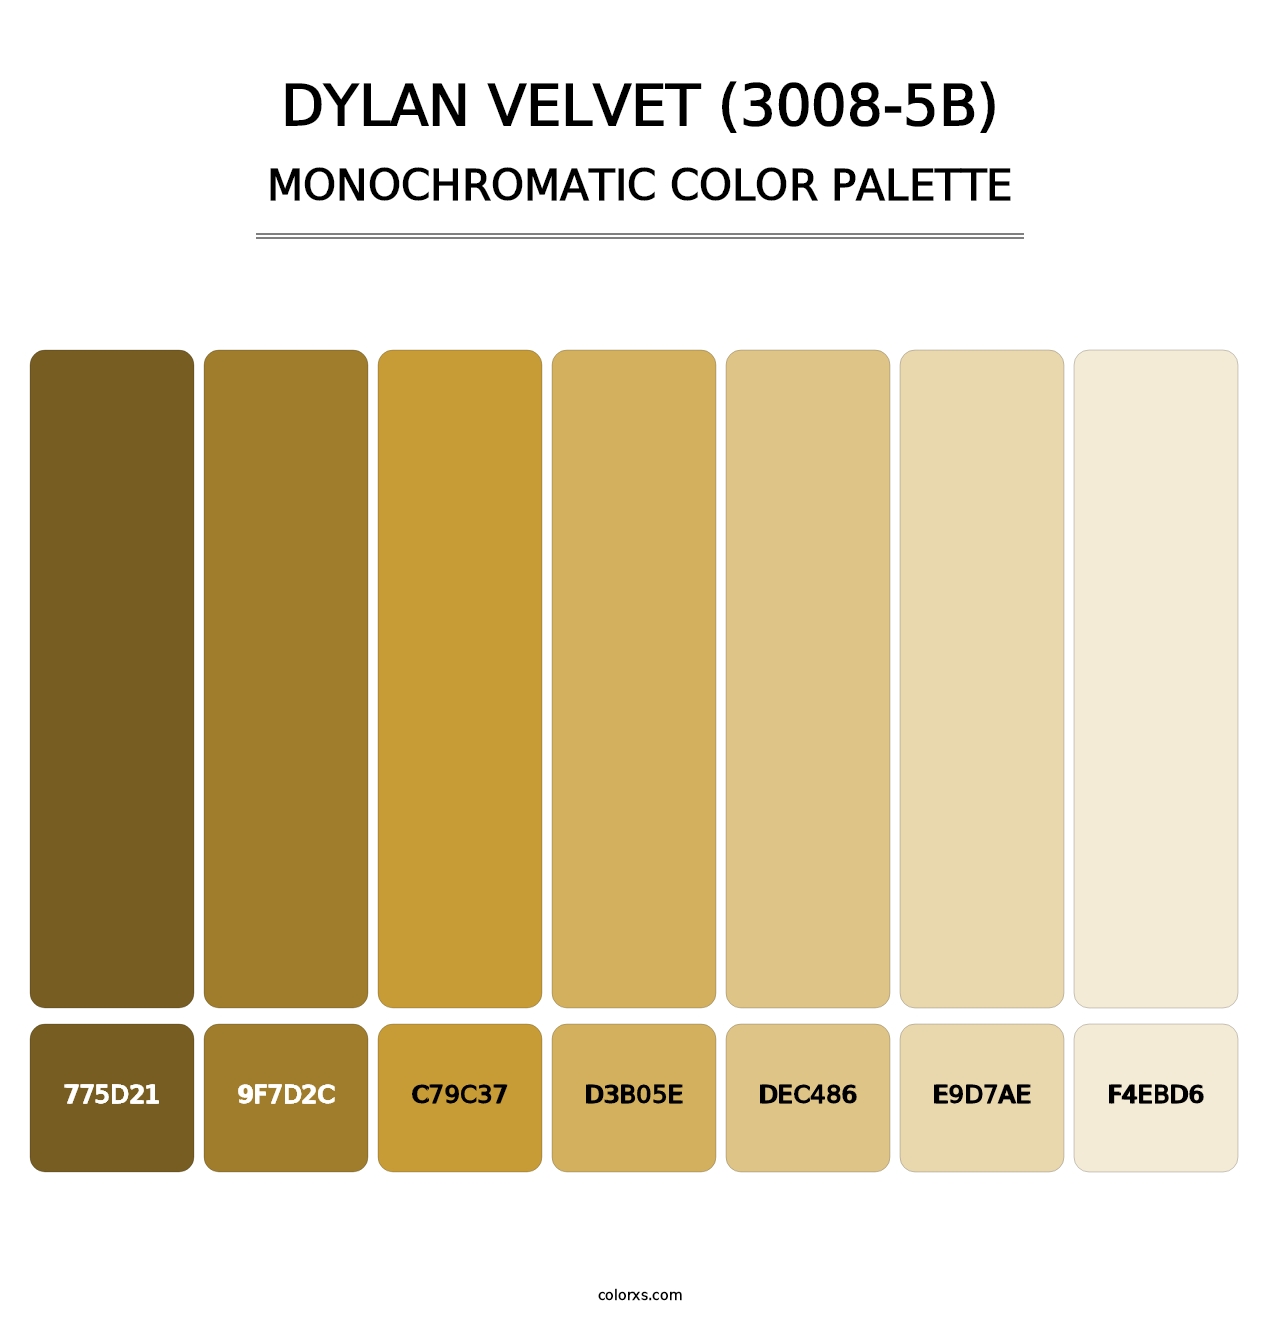 Dylan Velvet (3008-5B) - Monochromatic Color Palette